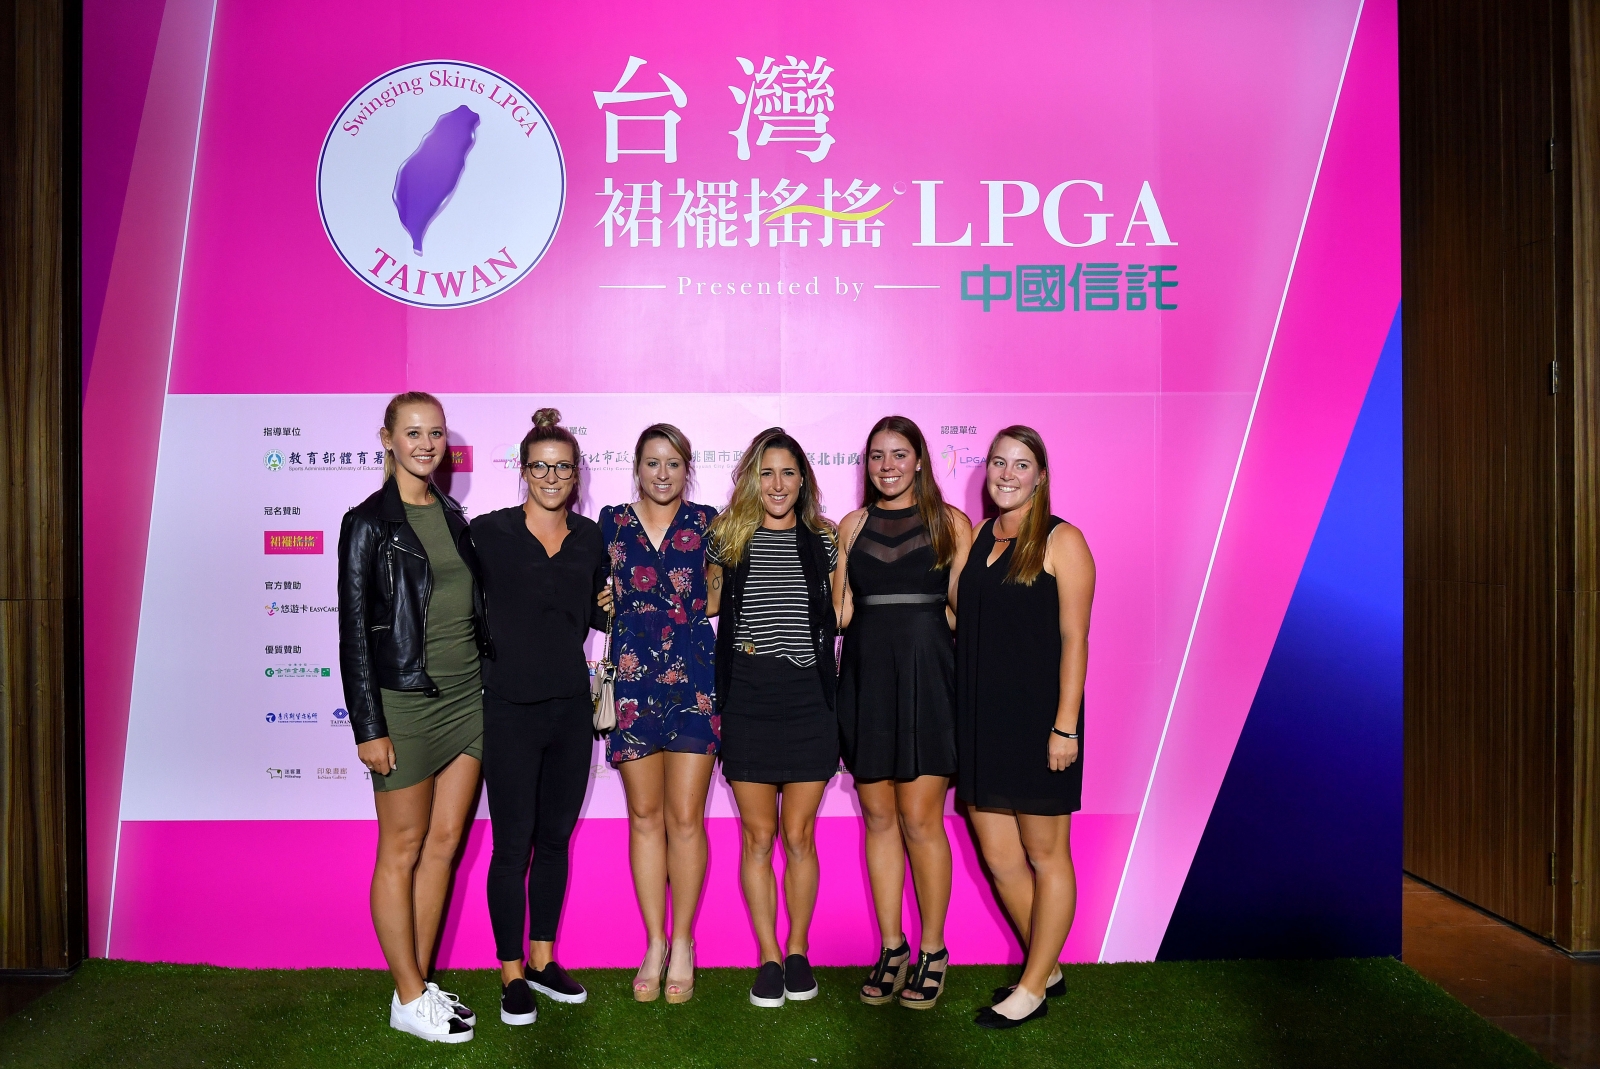 來自歐美的LPGA好手包括出身運動世家的潔西卡‧科達(Jessica Korda)，盛裝出席今天晚上的台灣裙襬搖搖LPGA歡迎晚會。